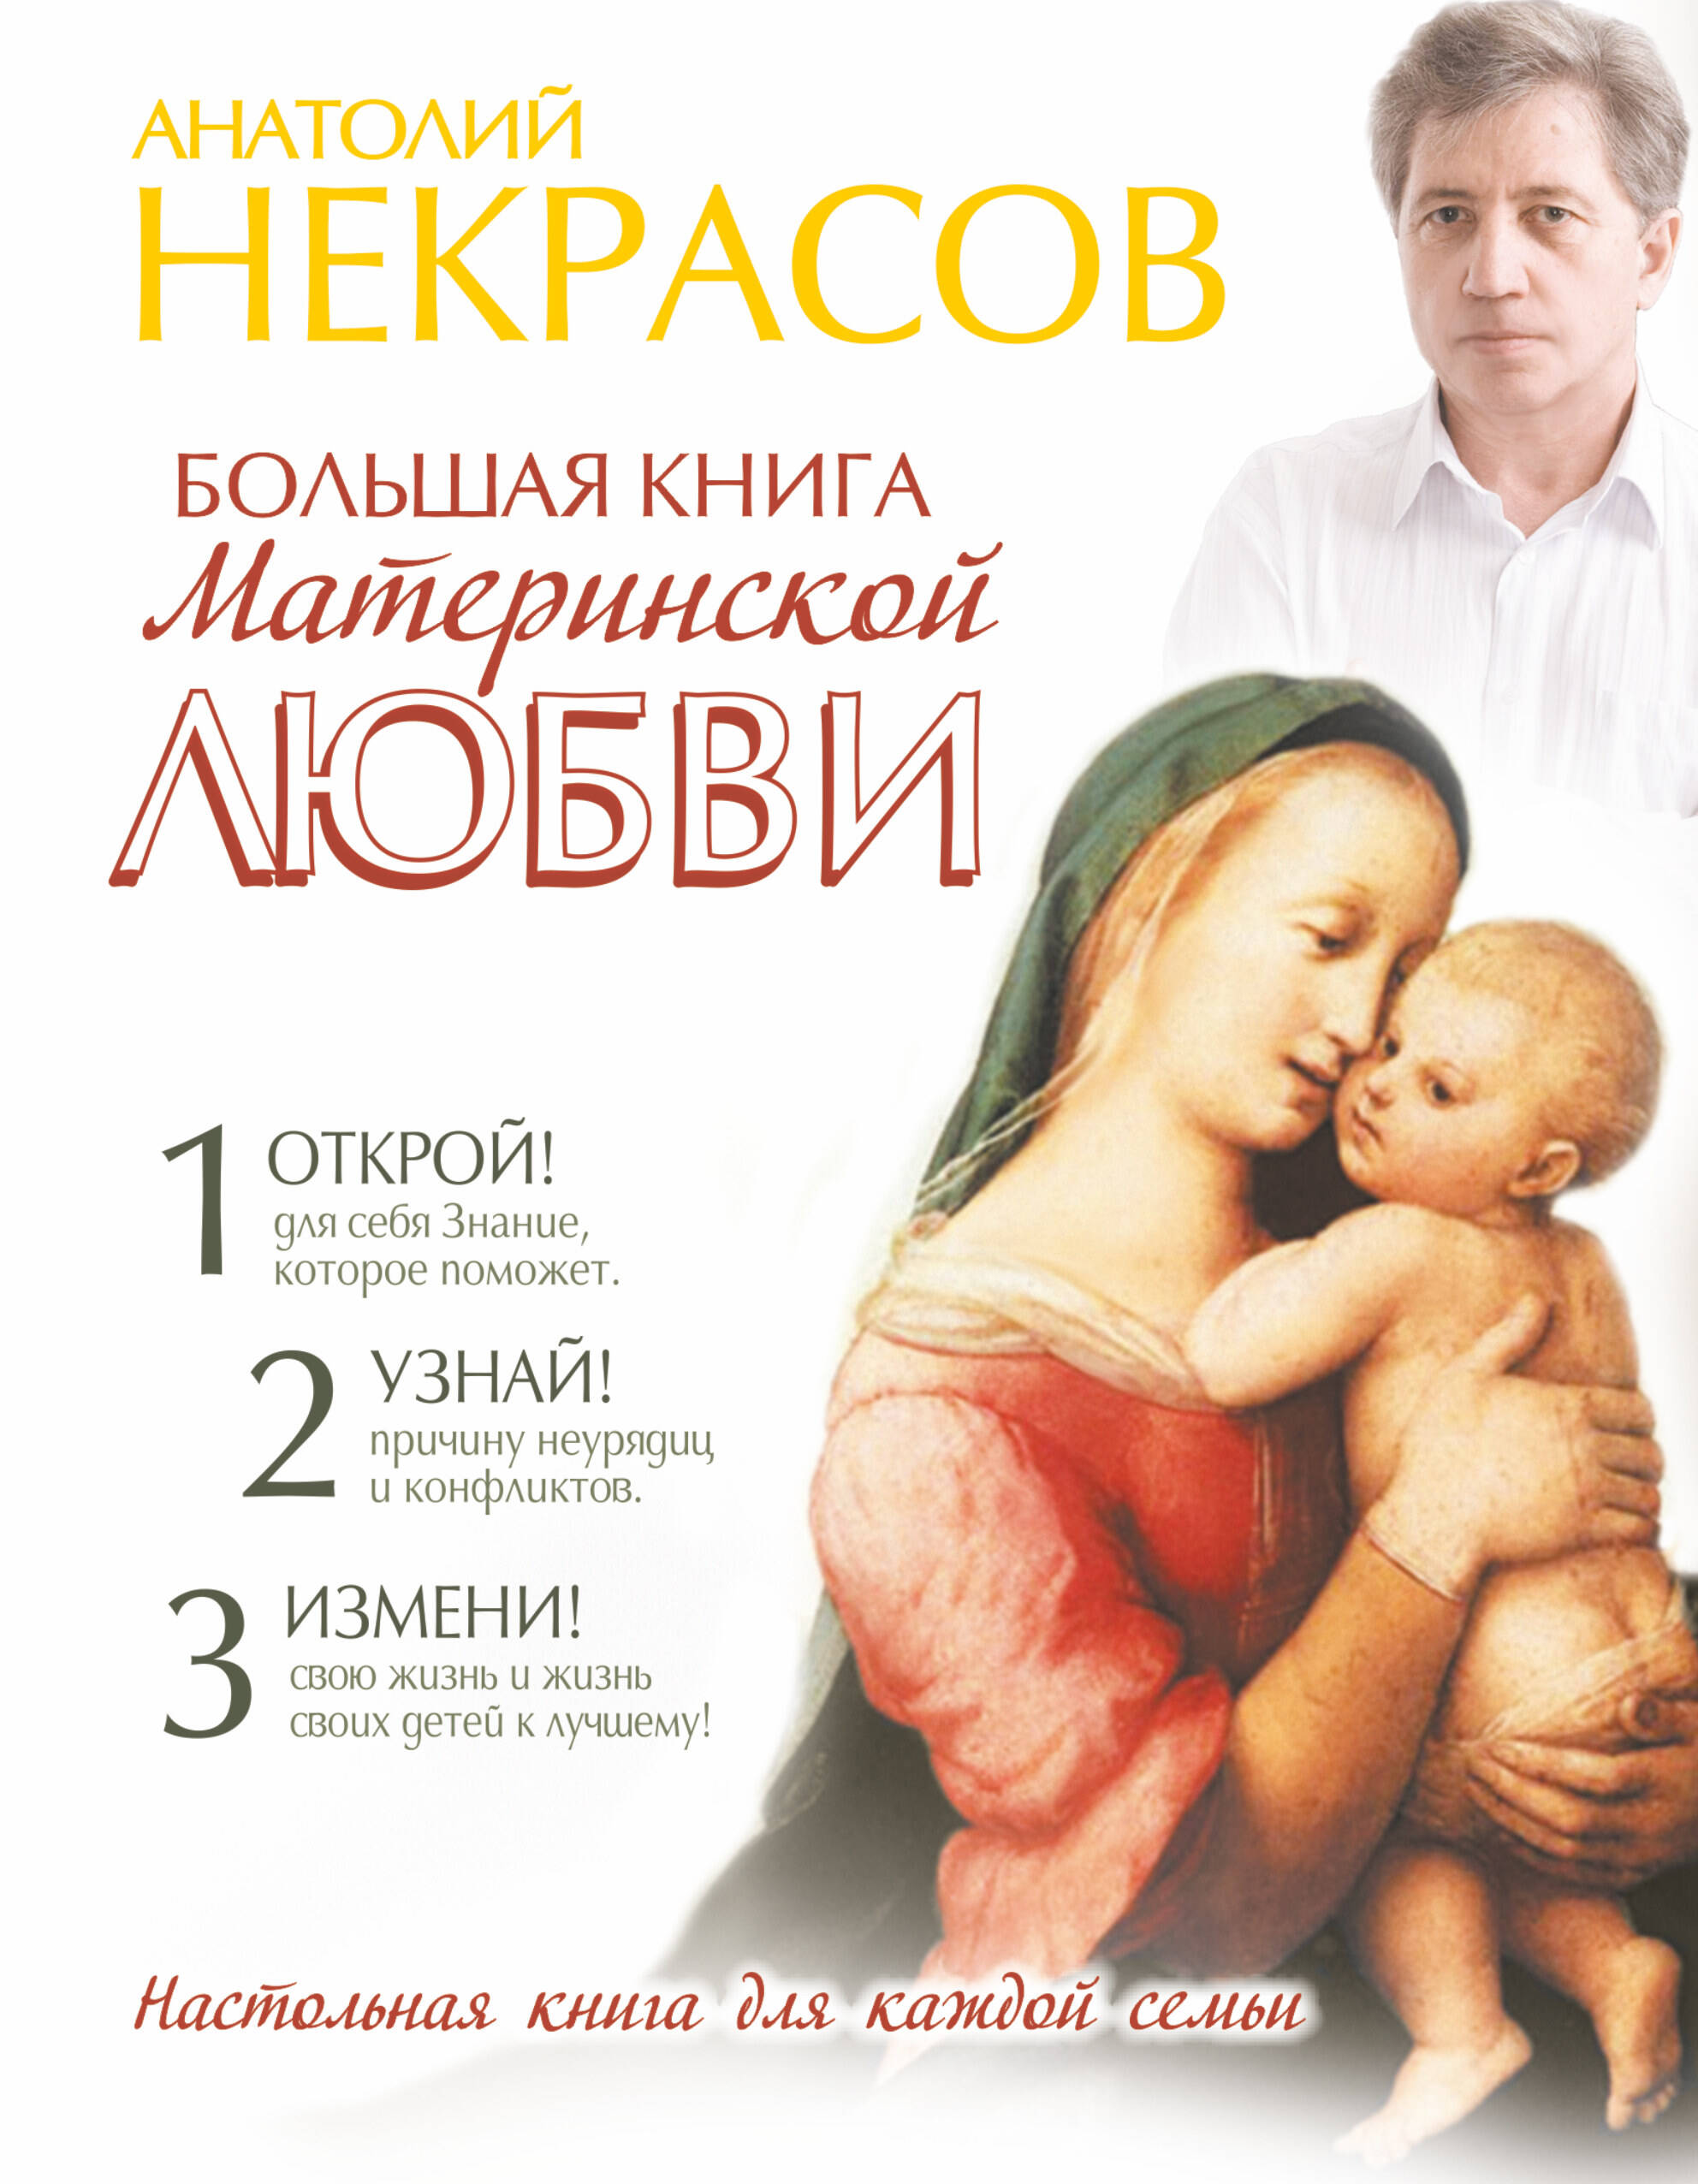 Некрасов Анатолий Александрович Большая книга материнской любви - страница 0